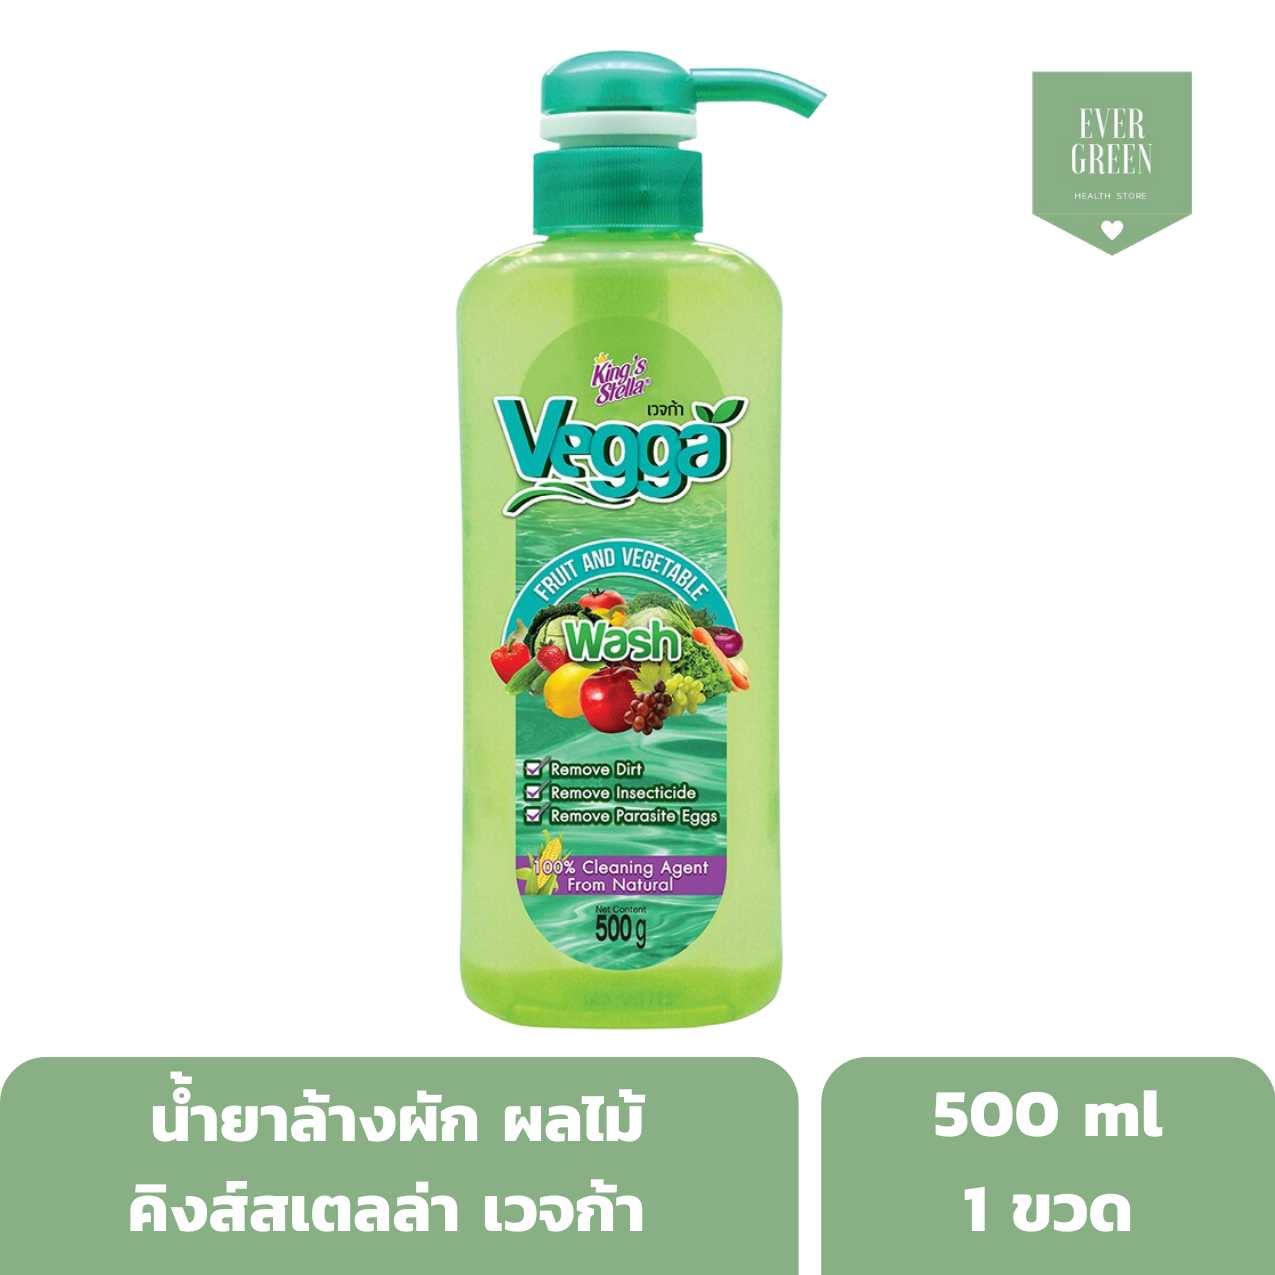 น้ำยาล้างผัก Vegga  น้ำยาล้างผักผลไม้ ล้างสารเคมี เชื้อแบคทีเรีย ไข่พยาธิได้อย่างหมดจด ผลิตจากธรรมชาติ ขนาด 500 ml x 1 ขวด